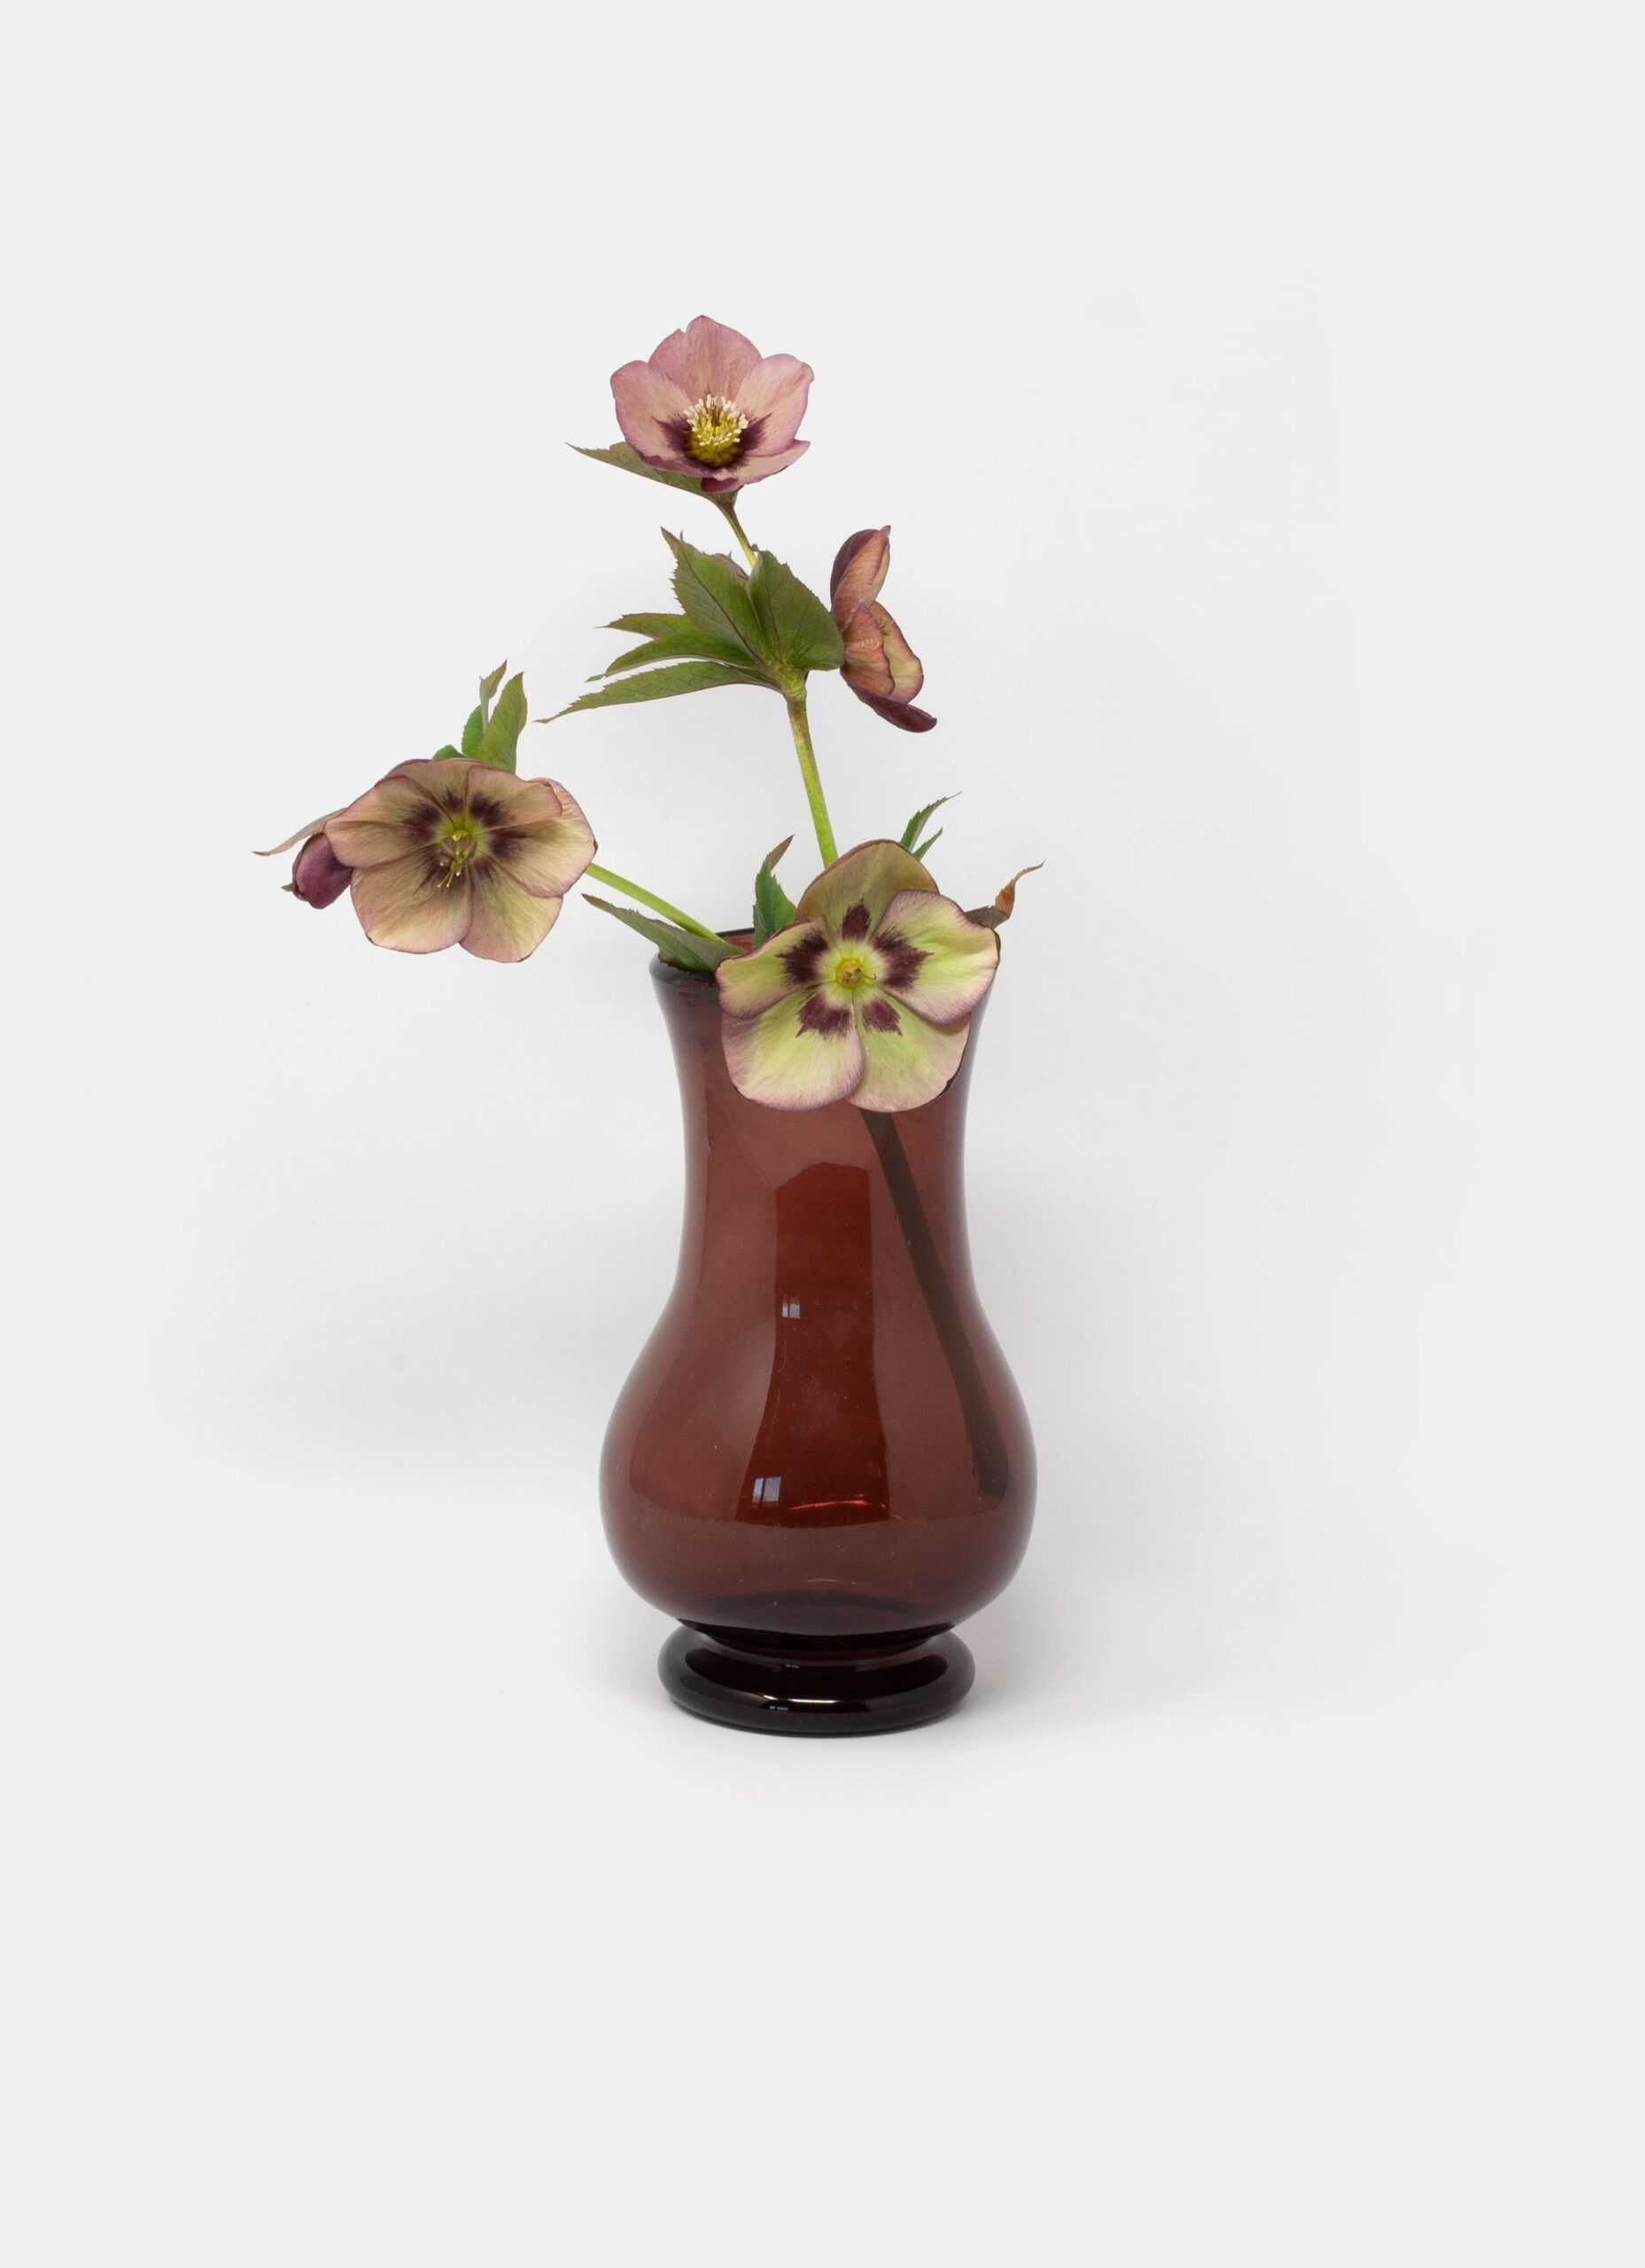 La Soufflerie - Handblown Glass Vase - Framboise - Pichet